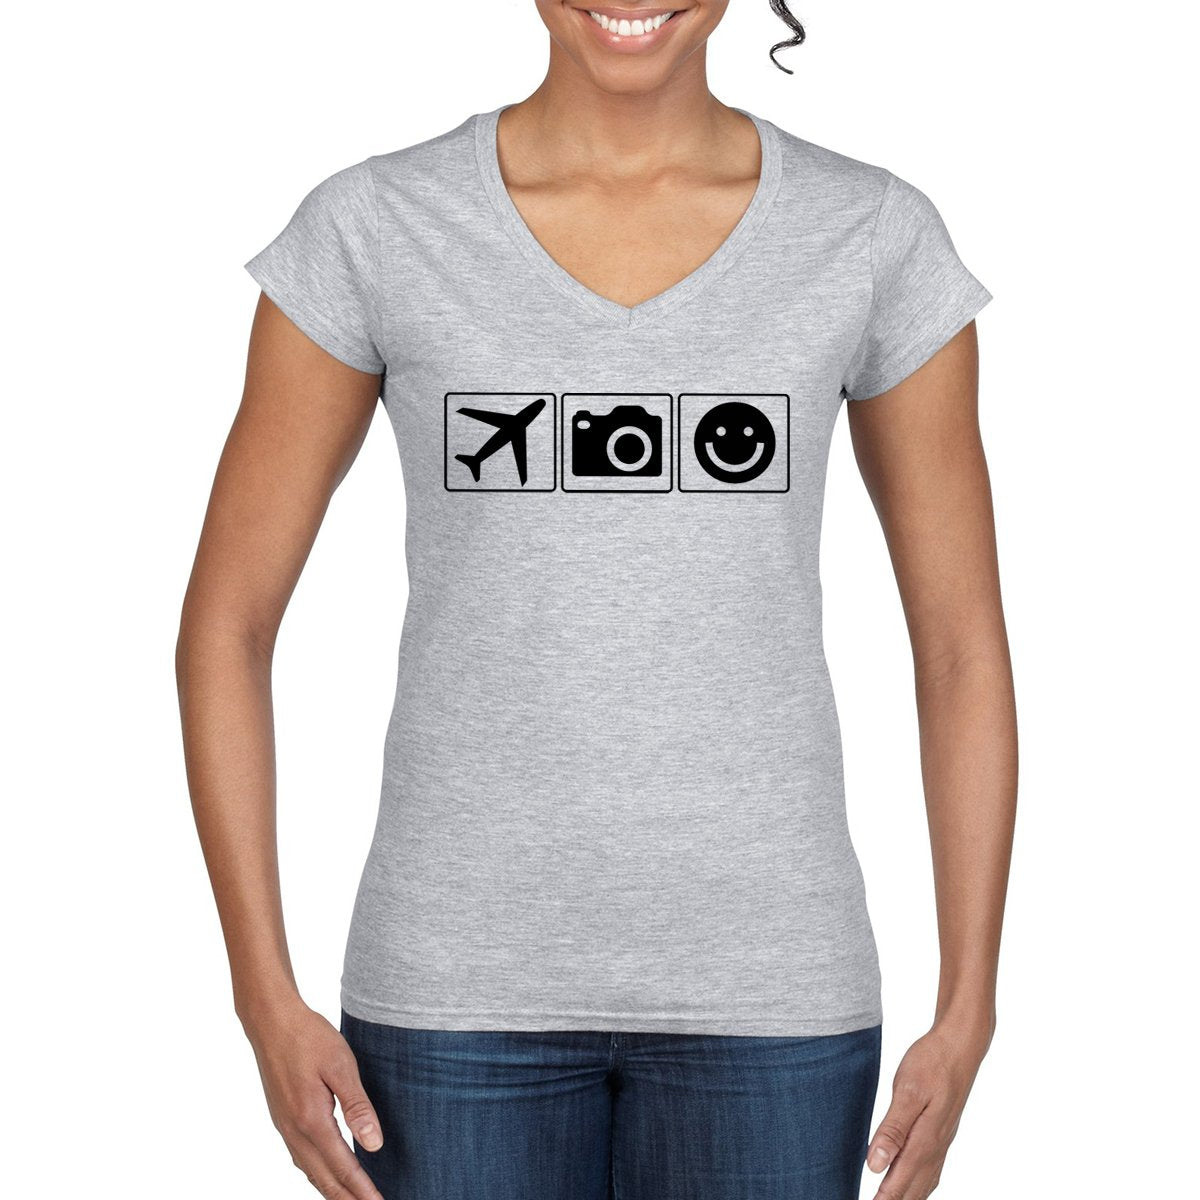 PLANE CAMERA SMILE Women's V-Neck T-Shirt